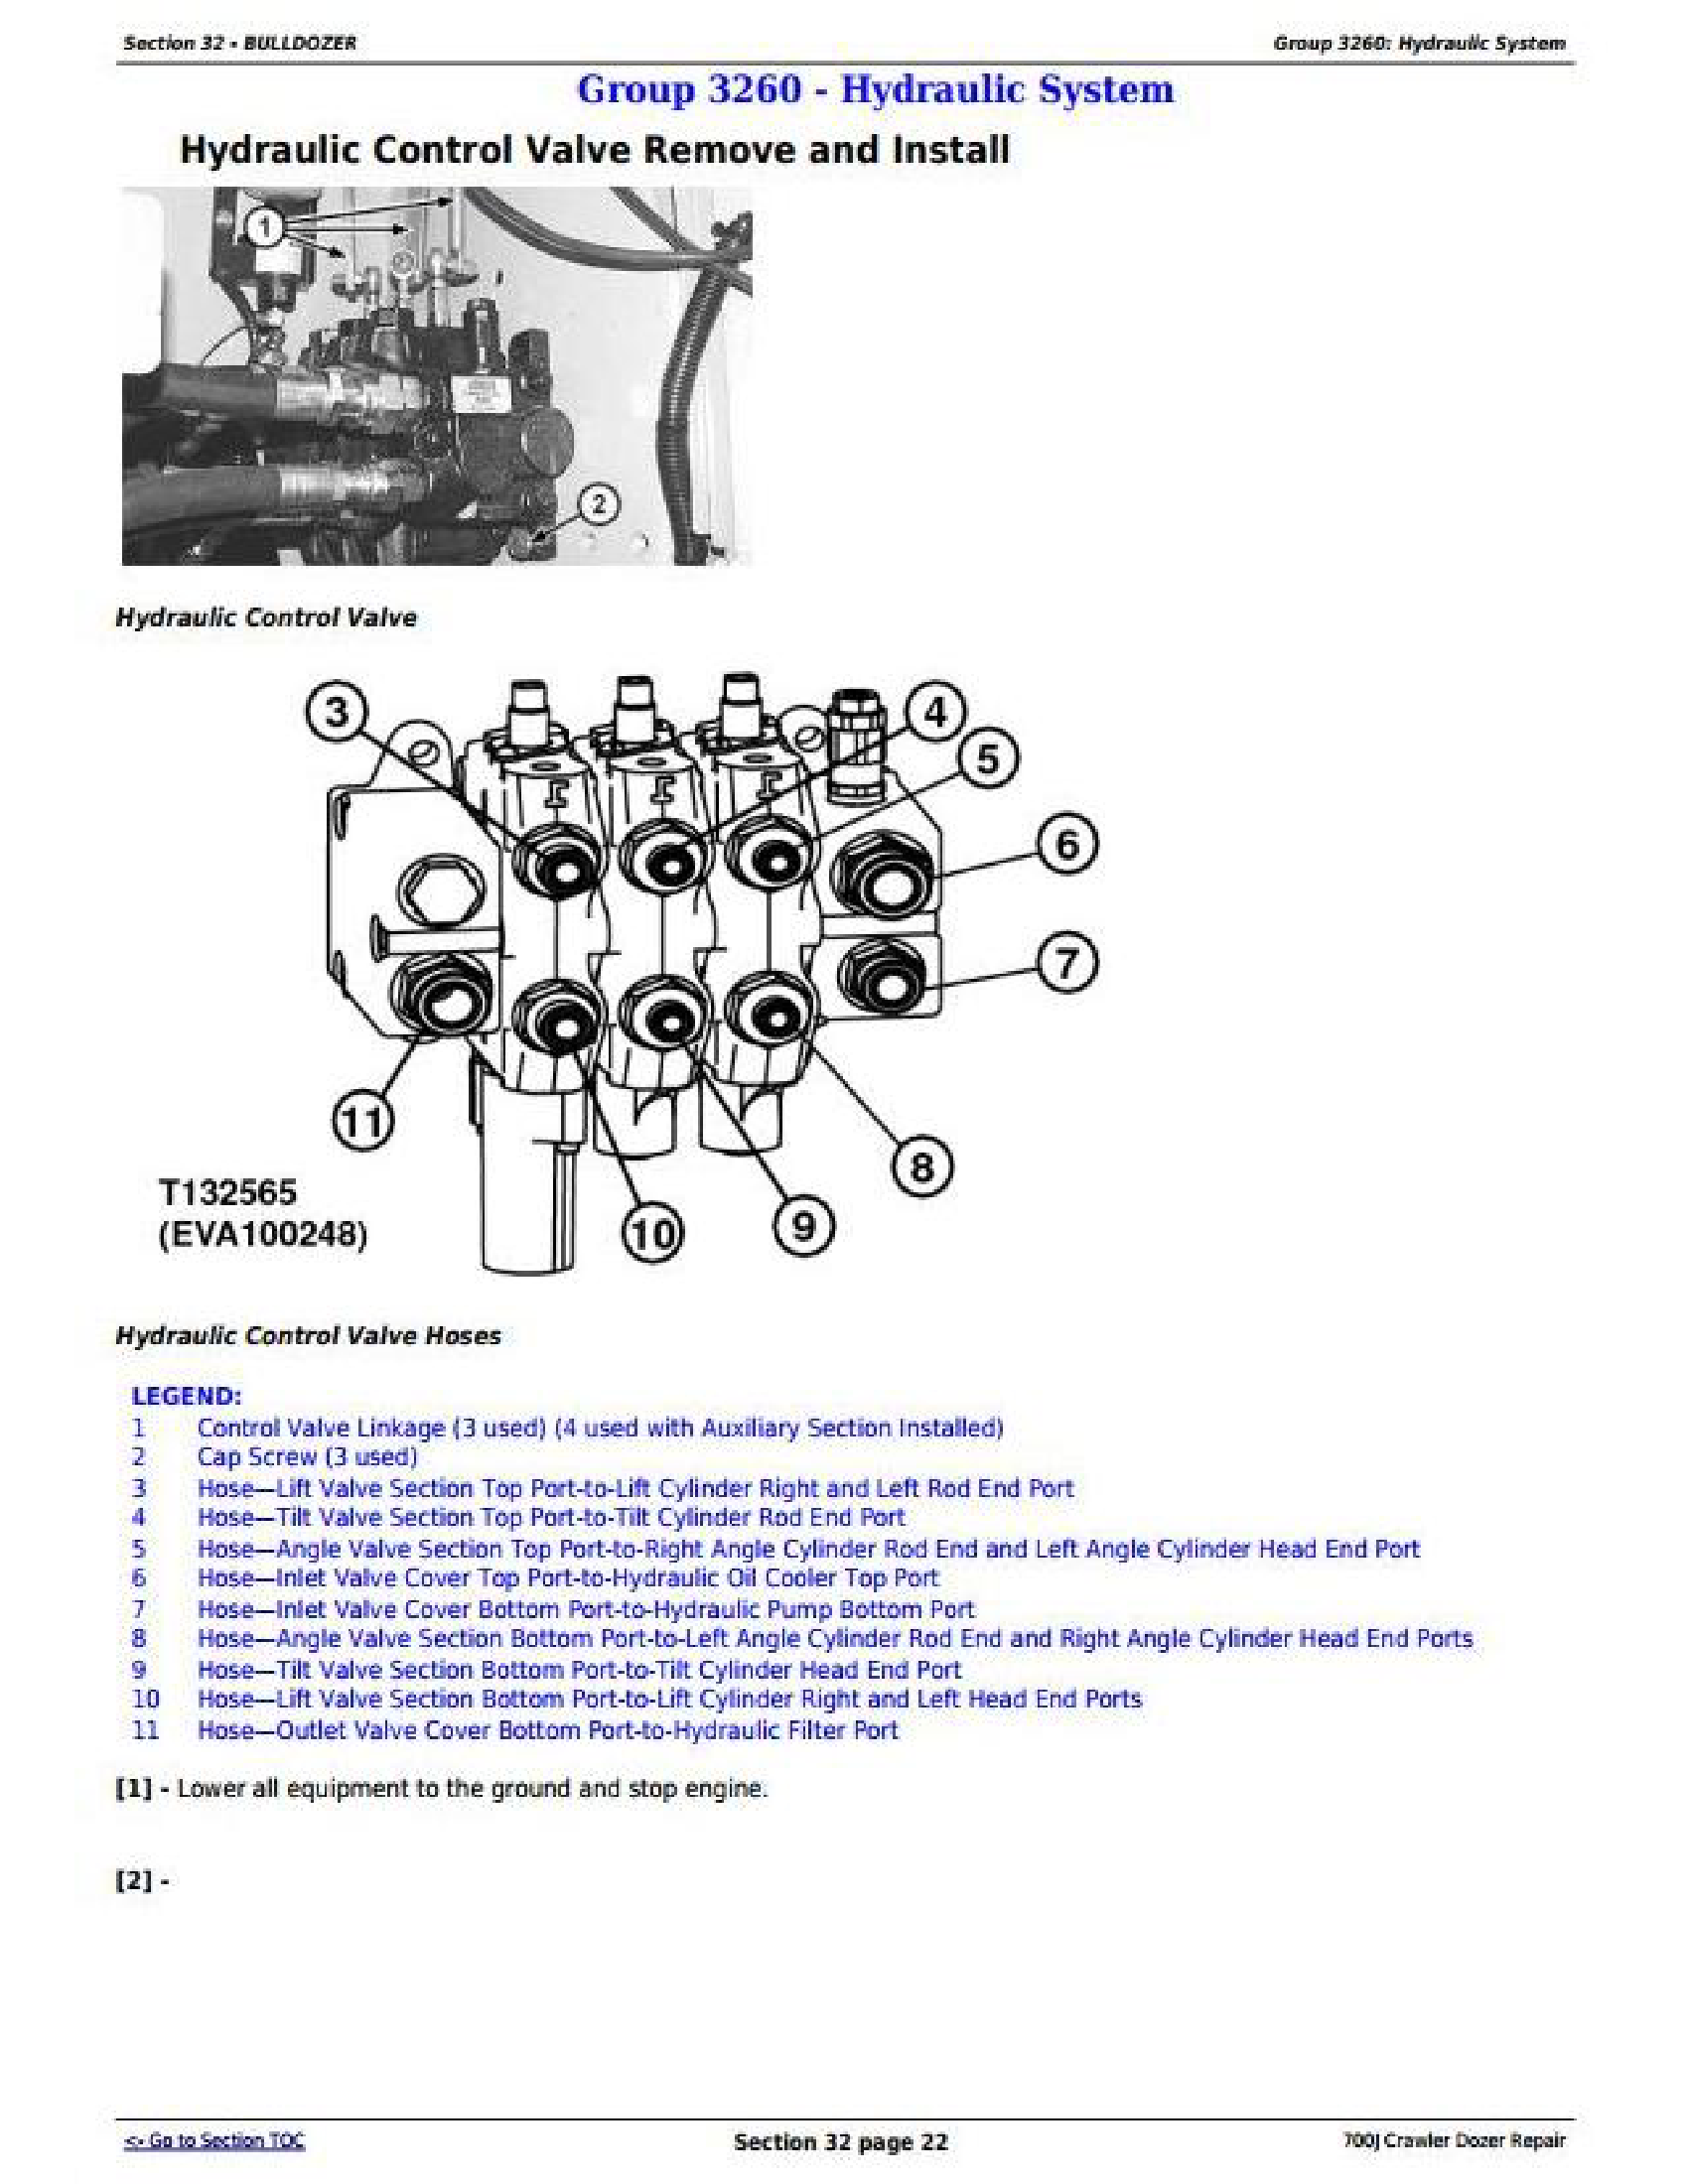 John Deere 700J manual pdf